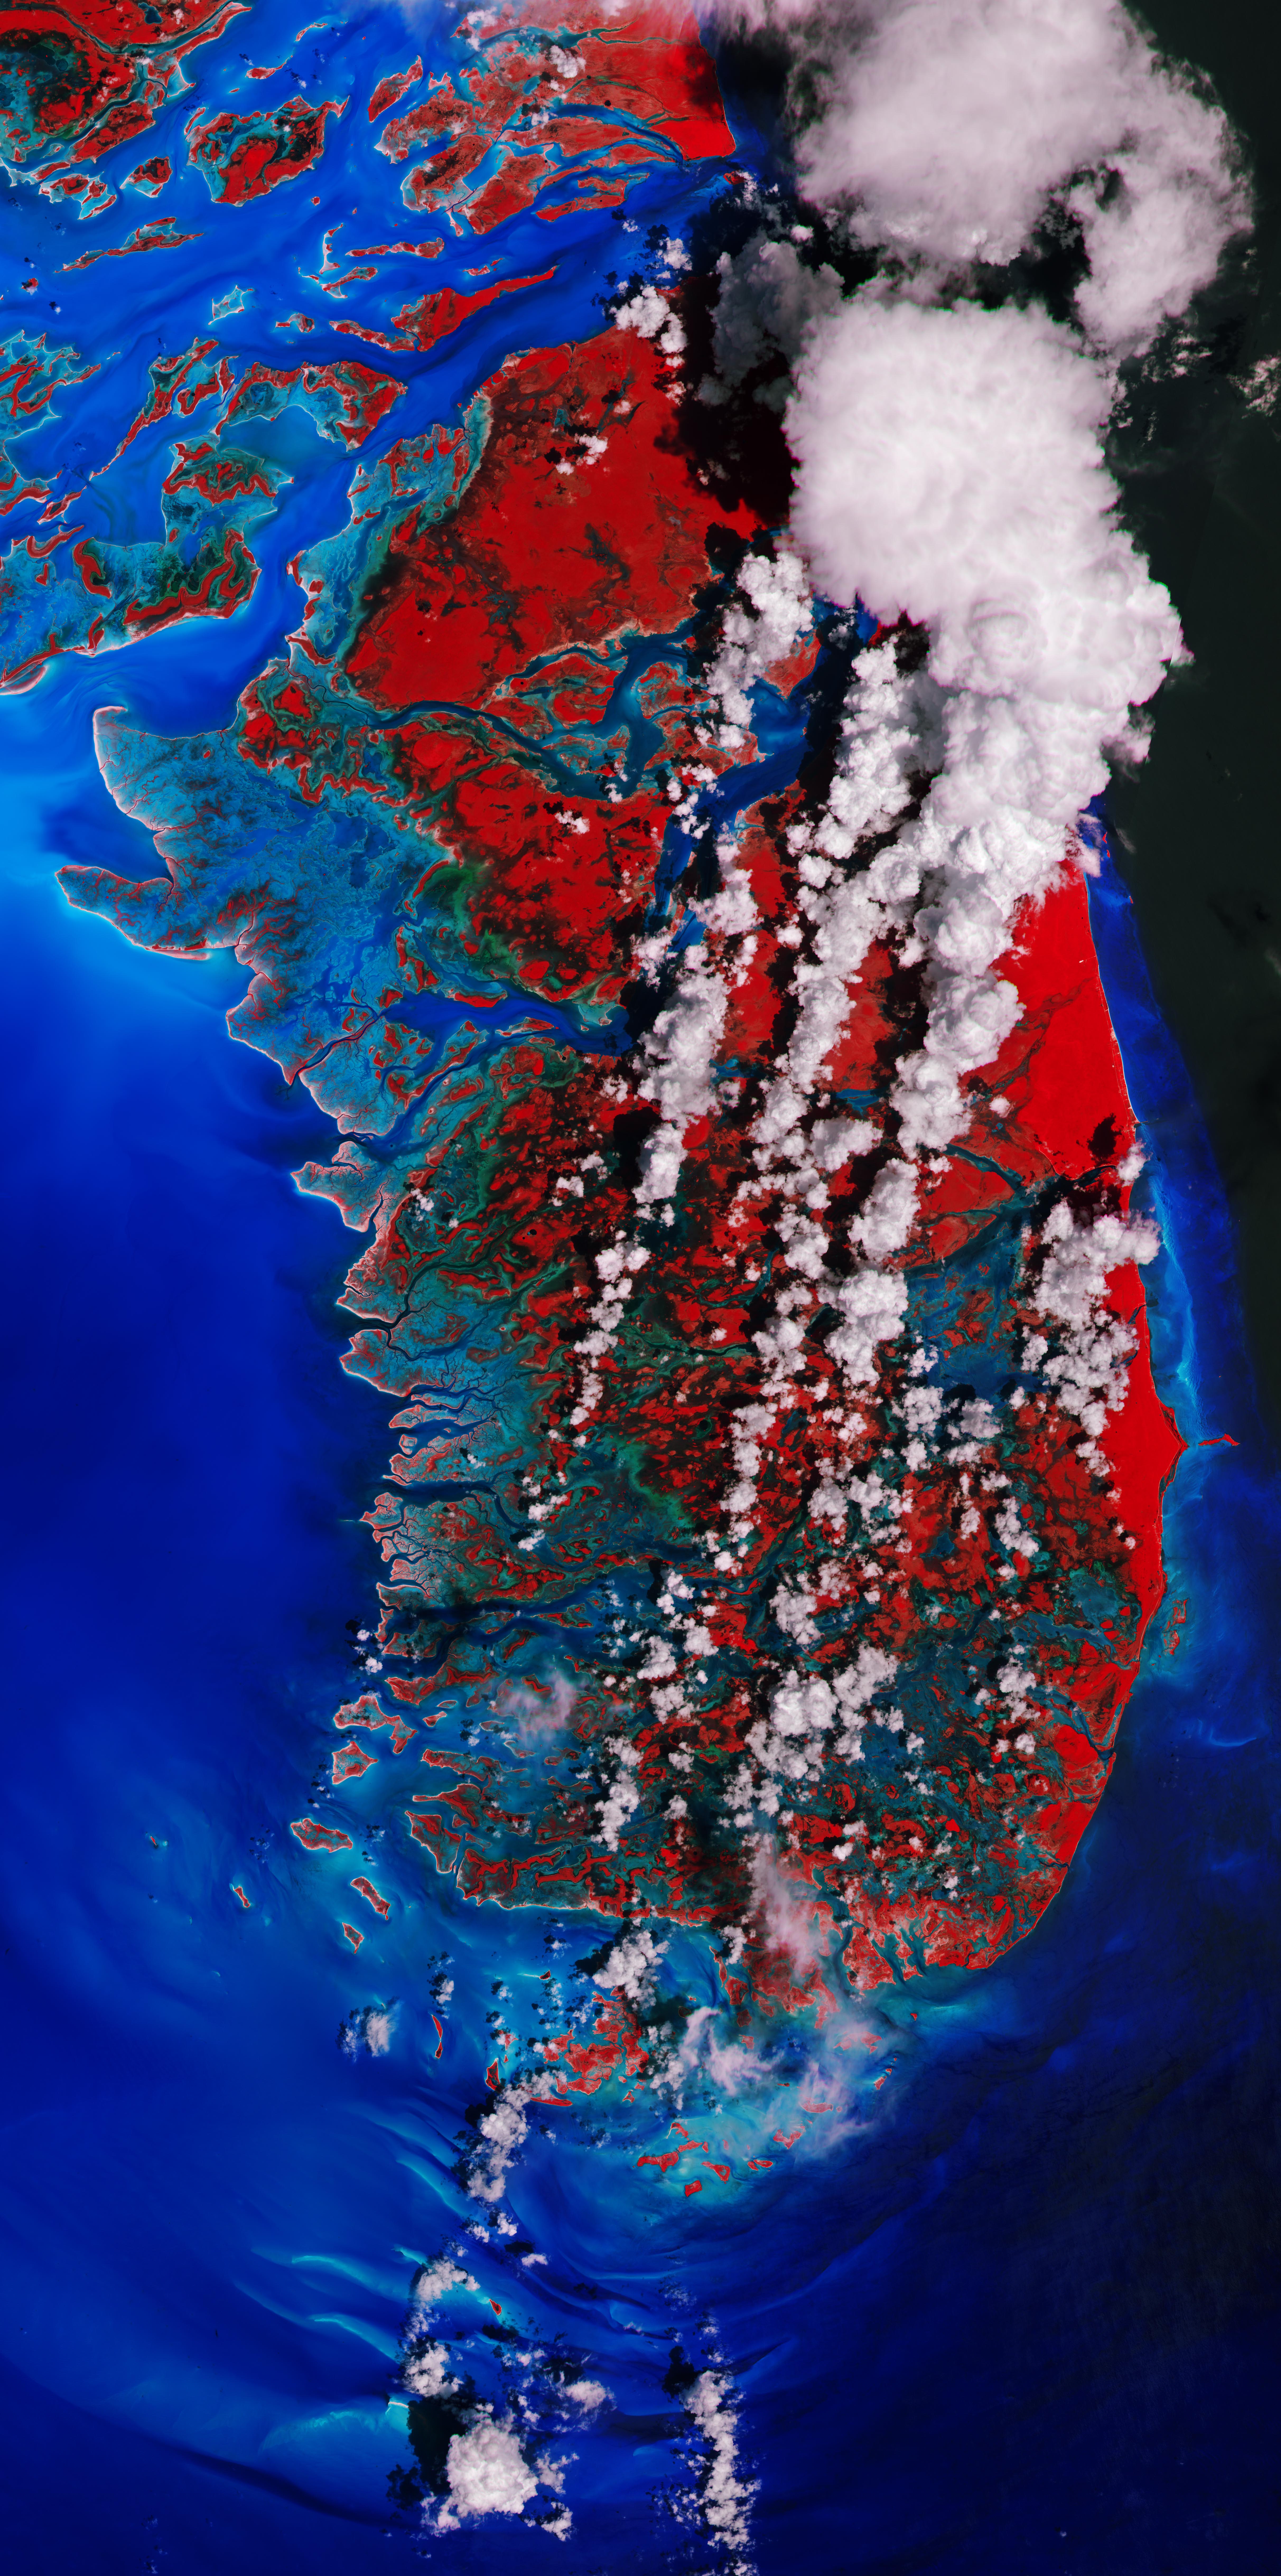 Das False-Color-Bild stellt die Vegetation er Bahamas-Insel Andros rot dar, das Meer ist tiefblau. von links unten nach rechts oben ziehen sich weiße Wolkenstreifen.